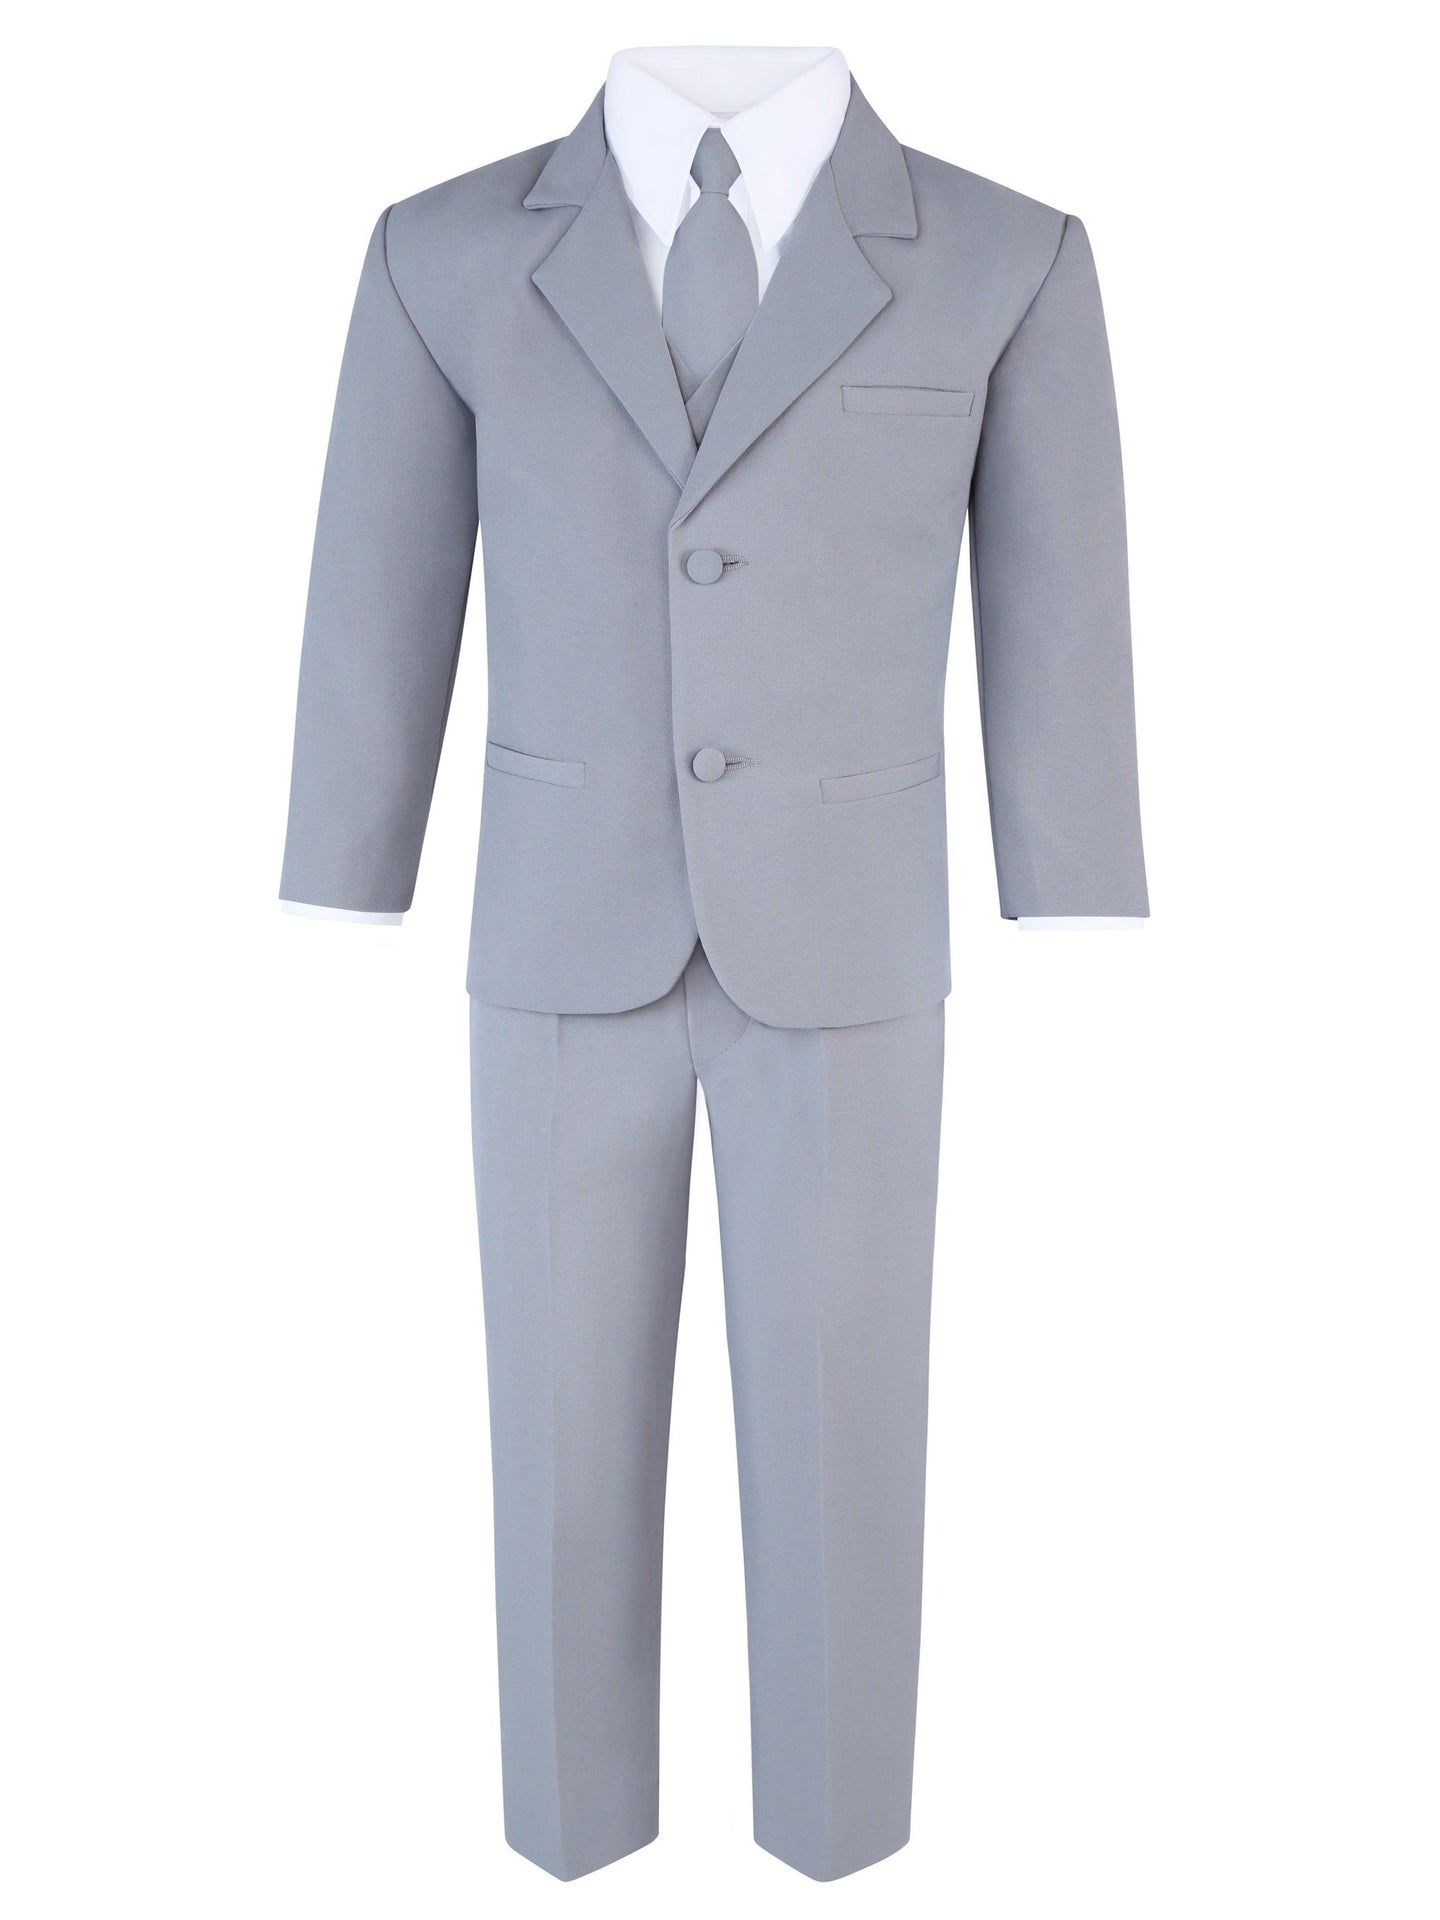 Boy's Gray 6-Piece Suit Set - Includes Suit Jacket, Dress Pants, Matching Vest, White Dress Shirt, Neck Tie & Bow Tie